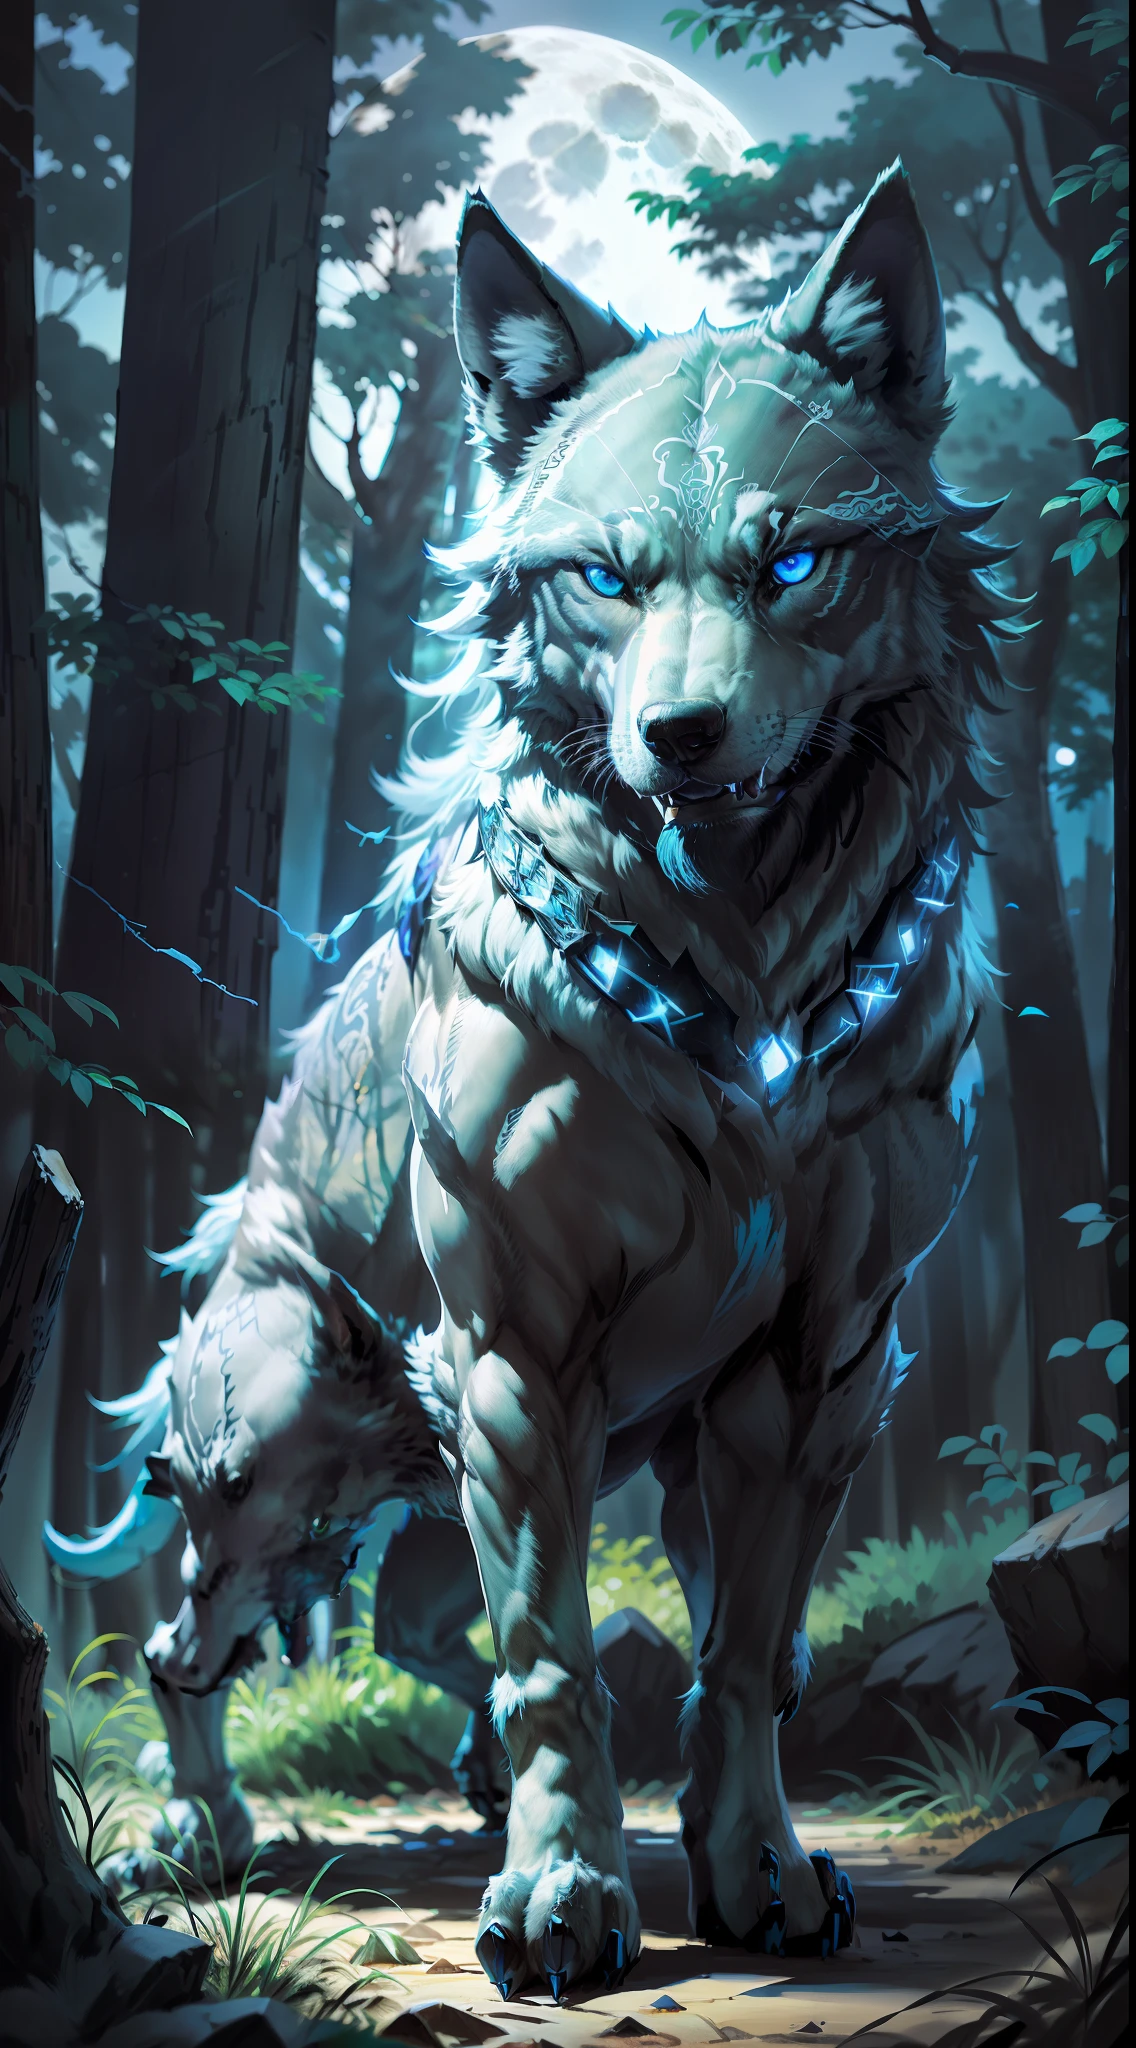 (逼真的开放图像) 狼群的超级保护者, "黑色的狼明亮的蓝眼睛." 犬狼群, (满月, 夜森林)